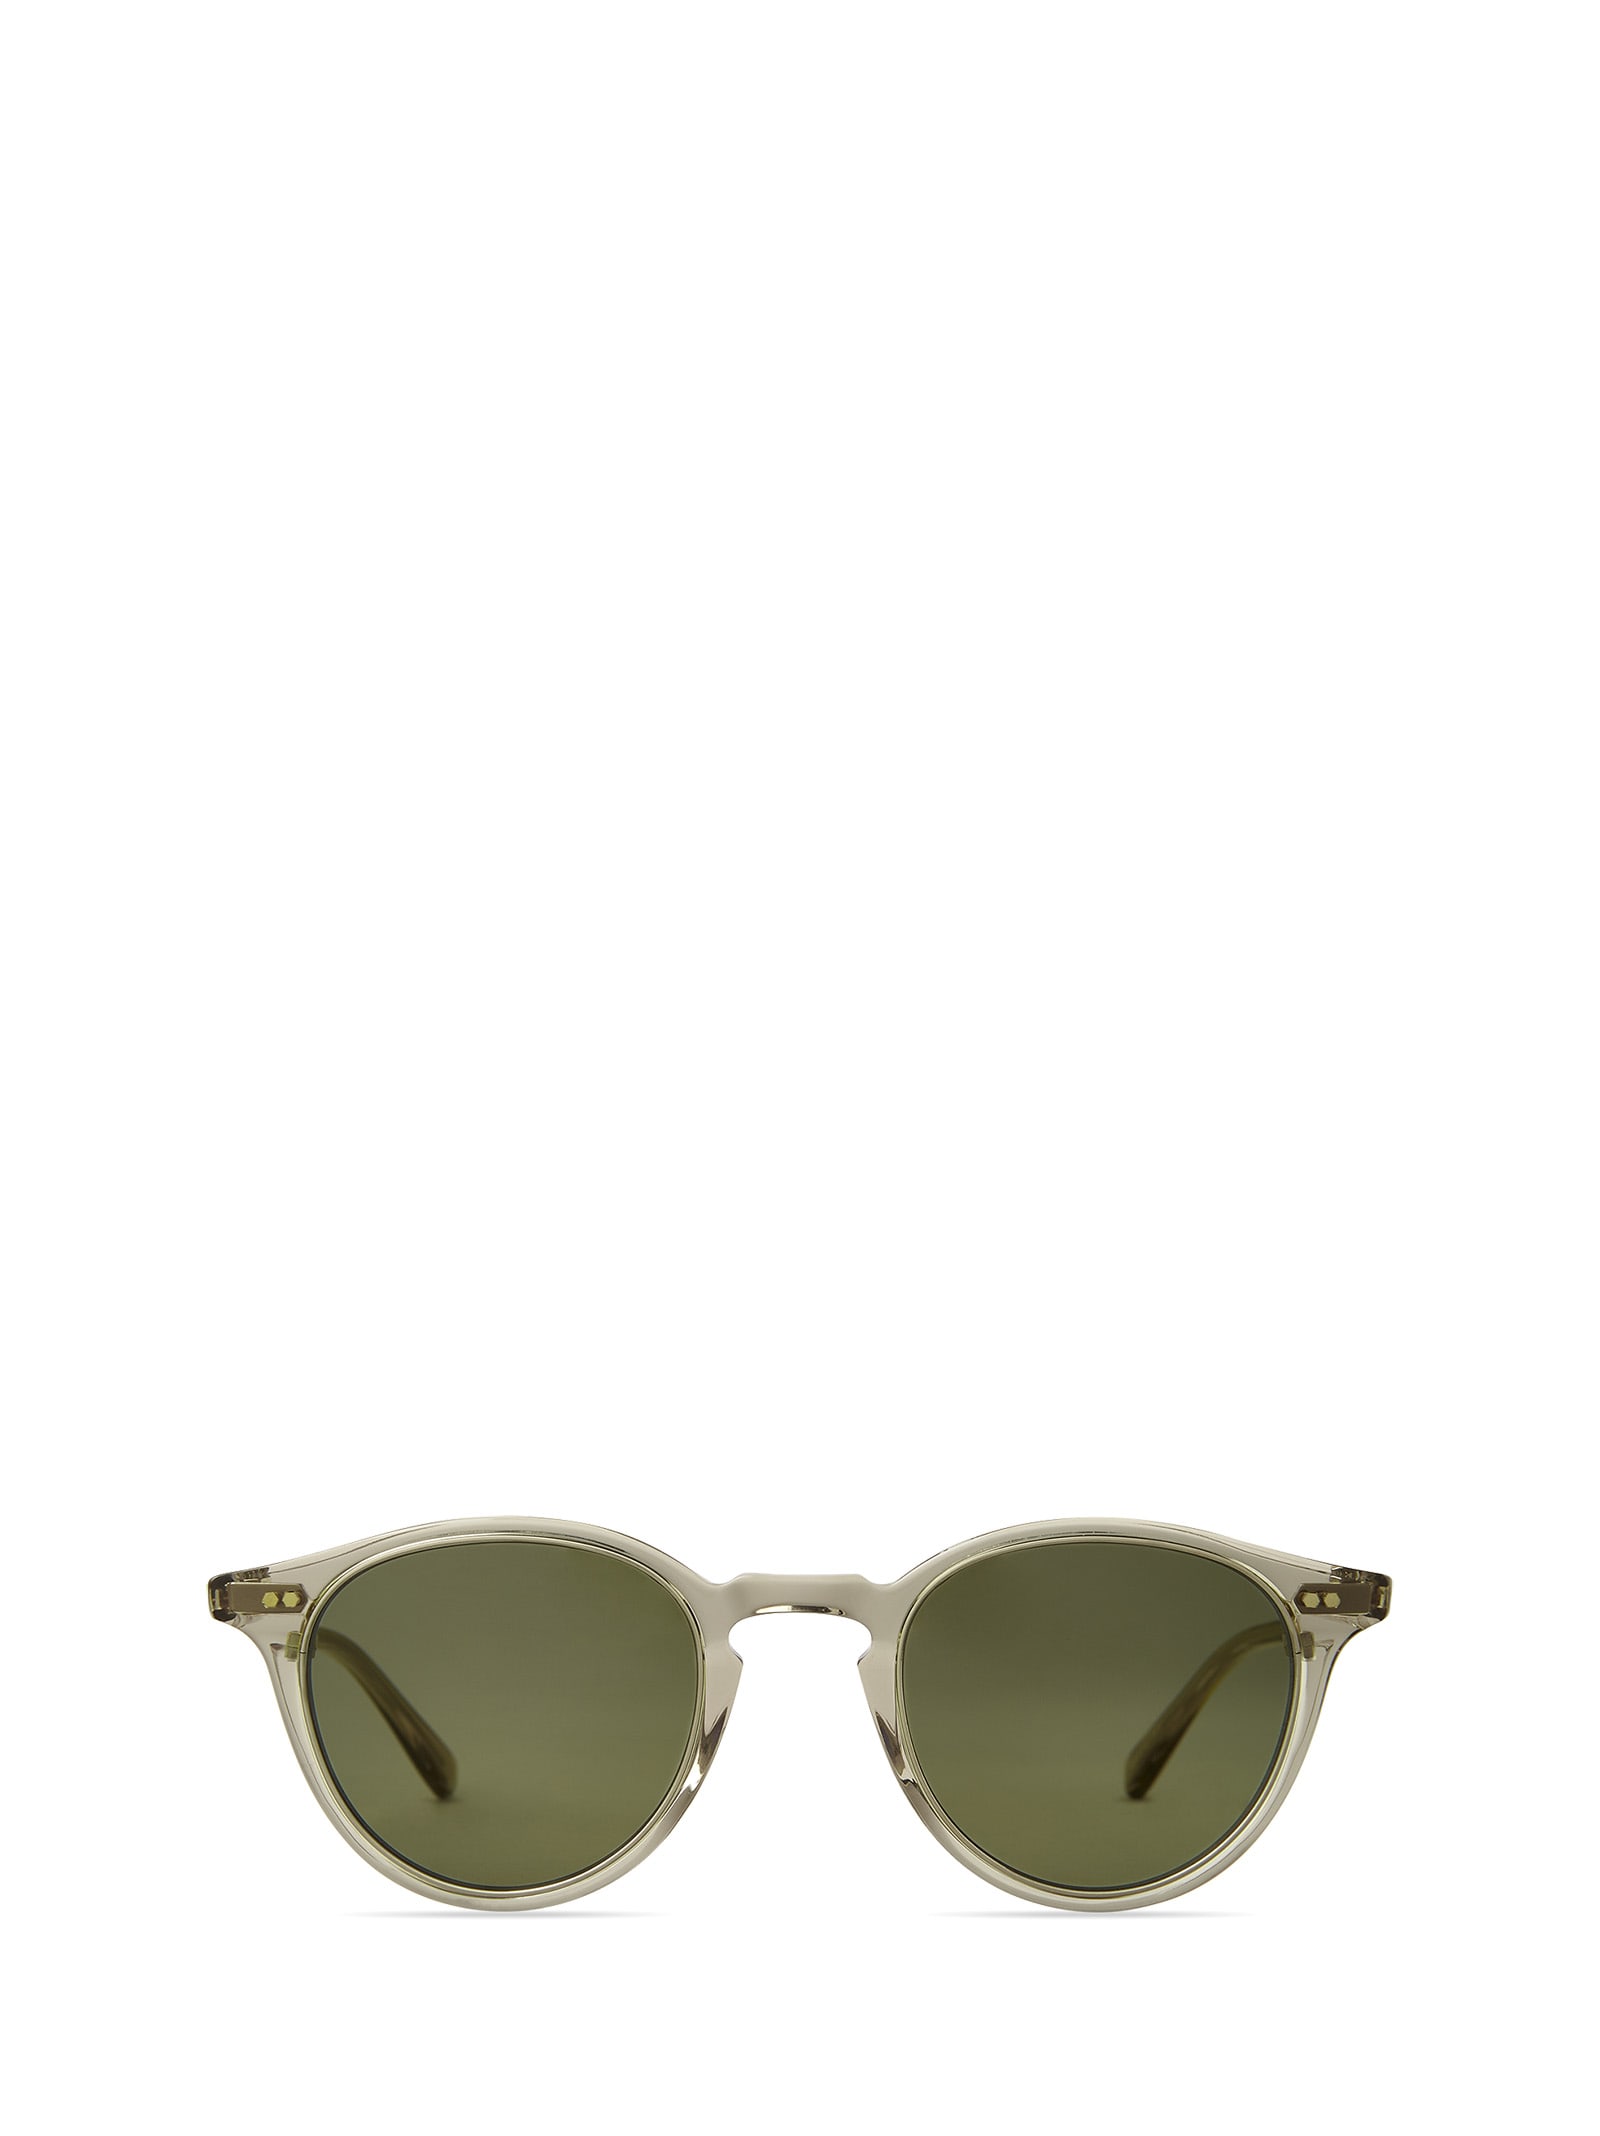 Marmont Ii S Olivine-white Gold Sunglasses